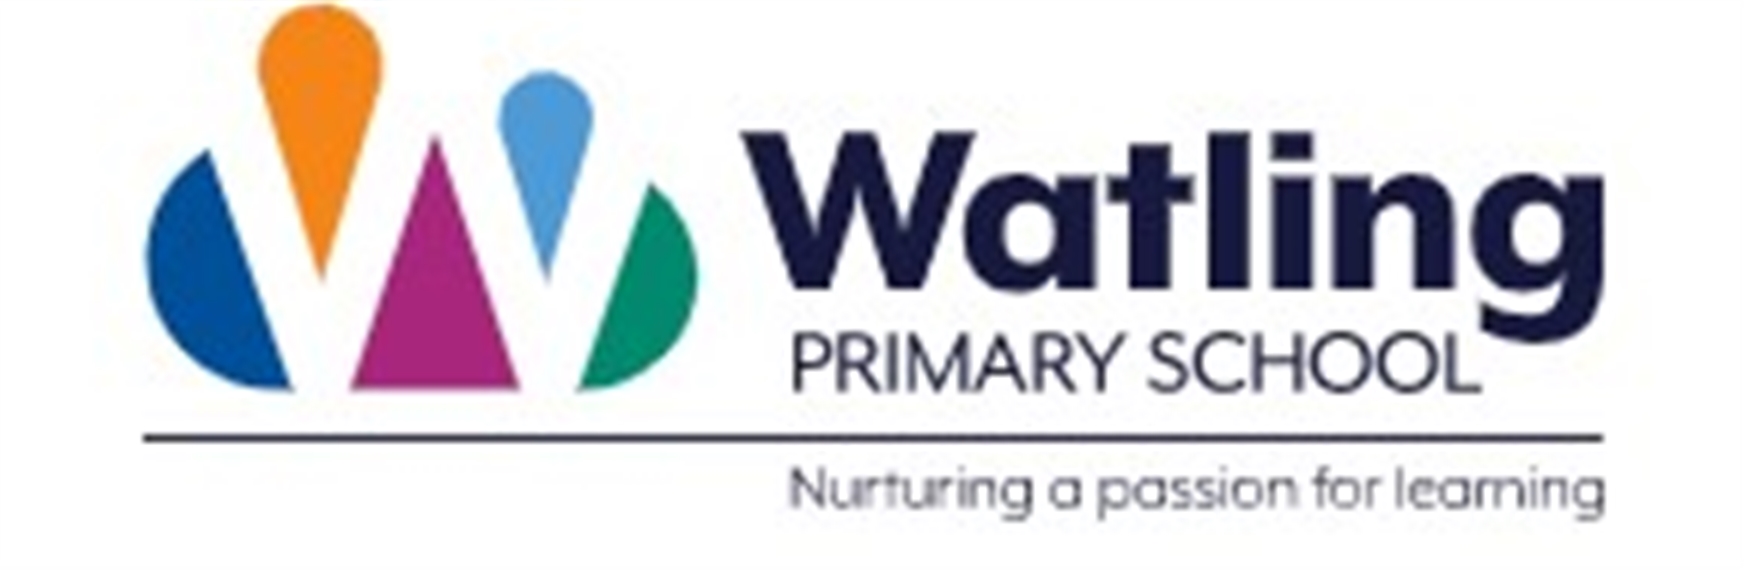 Watling Primary School 